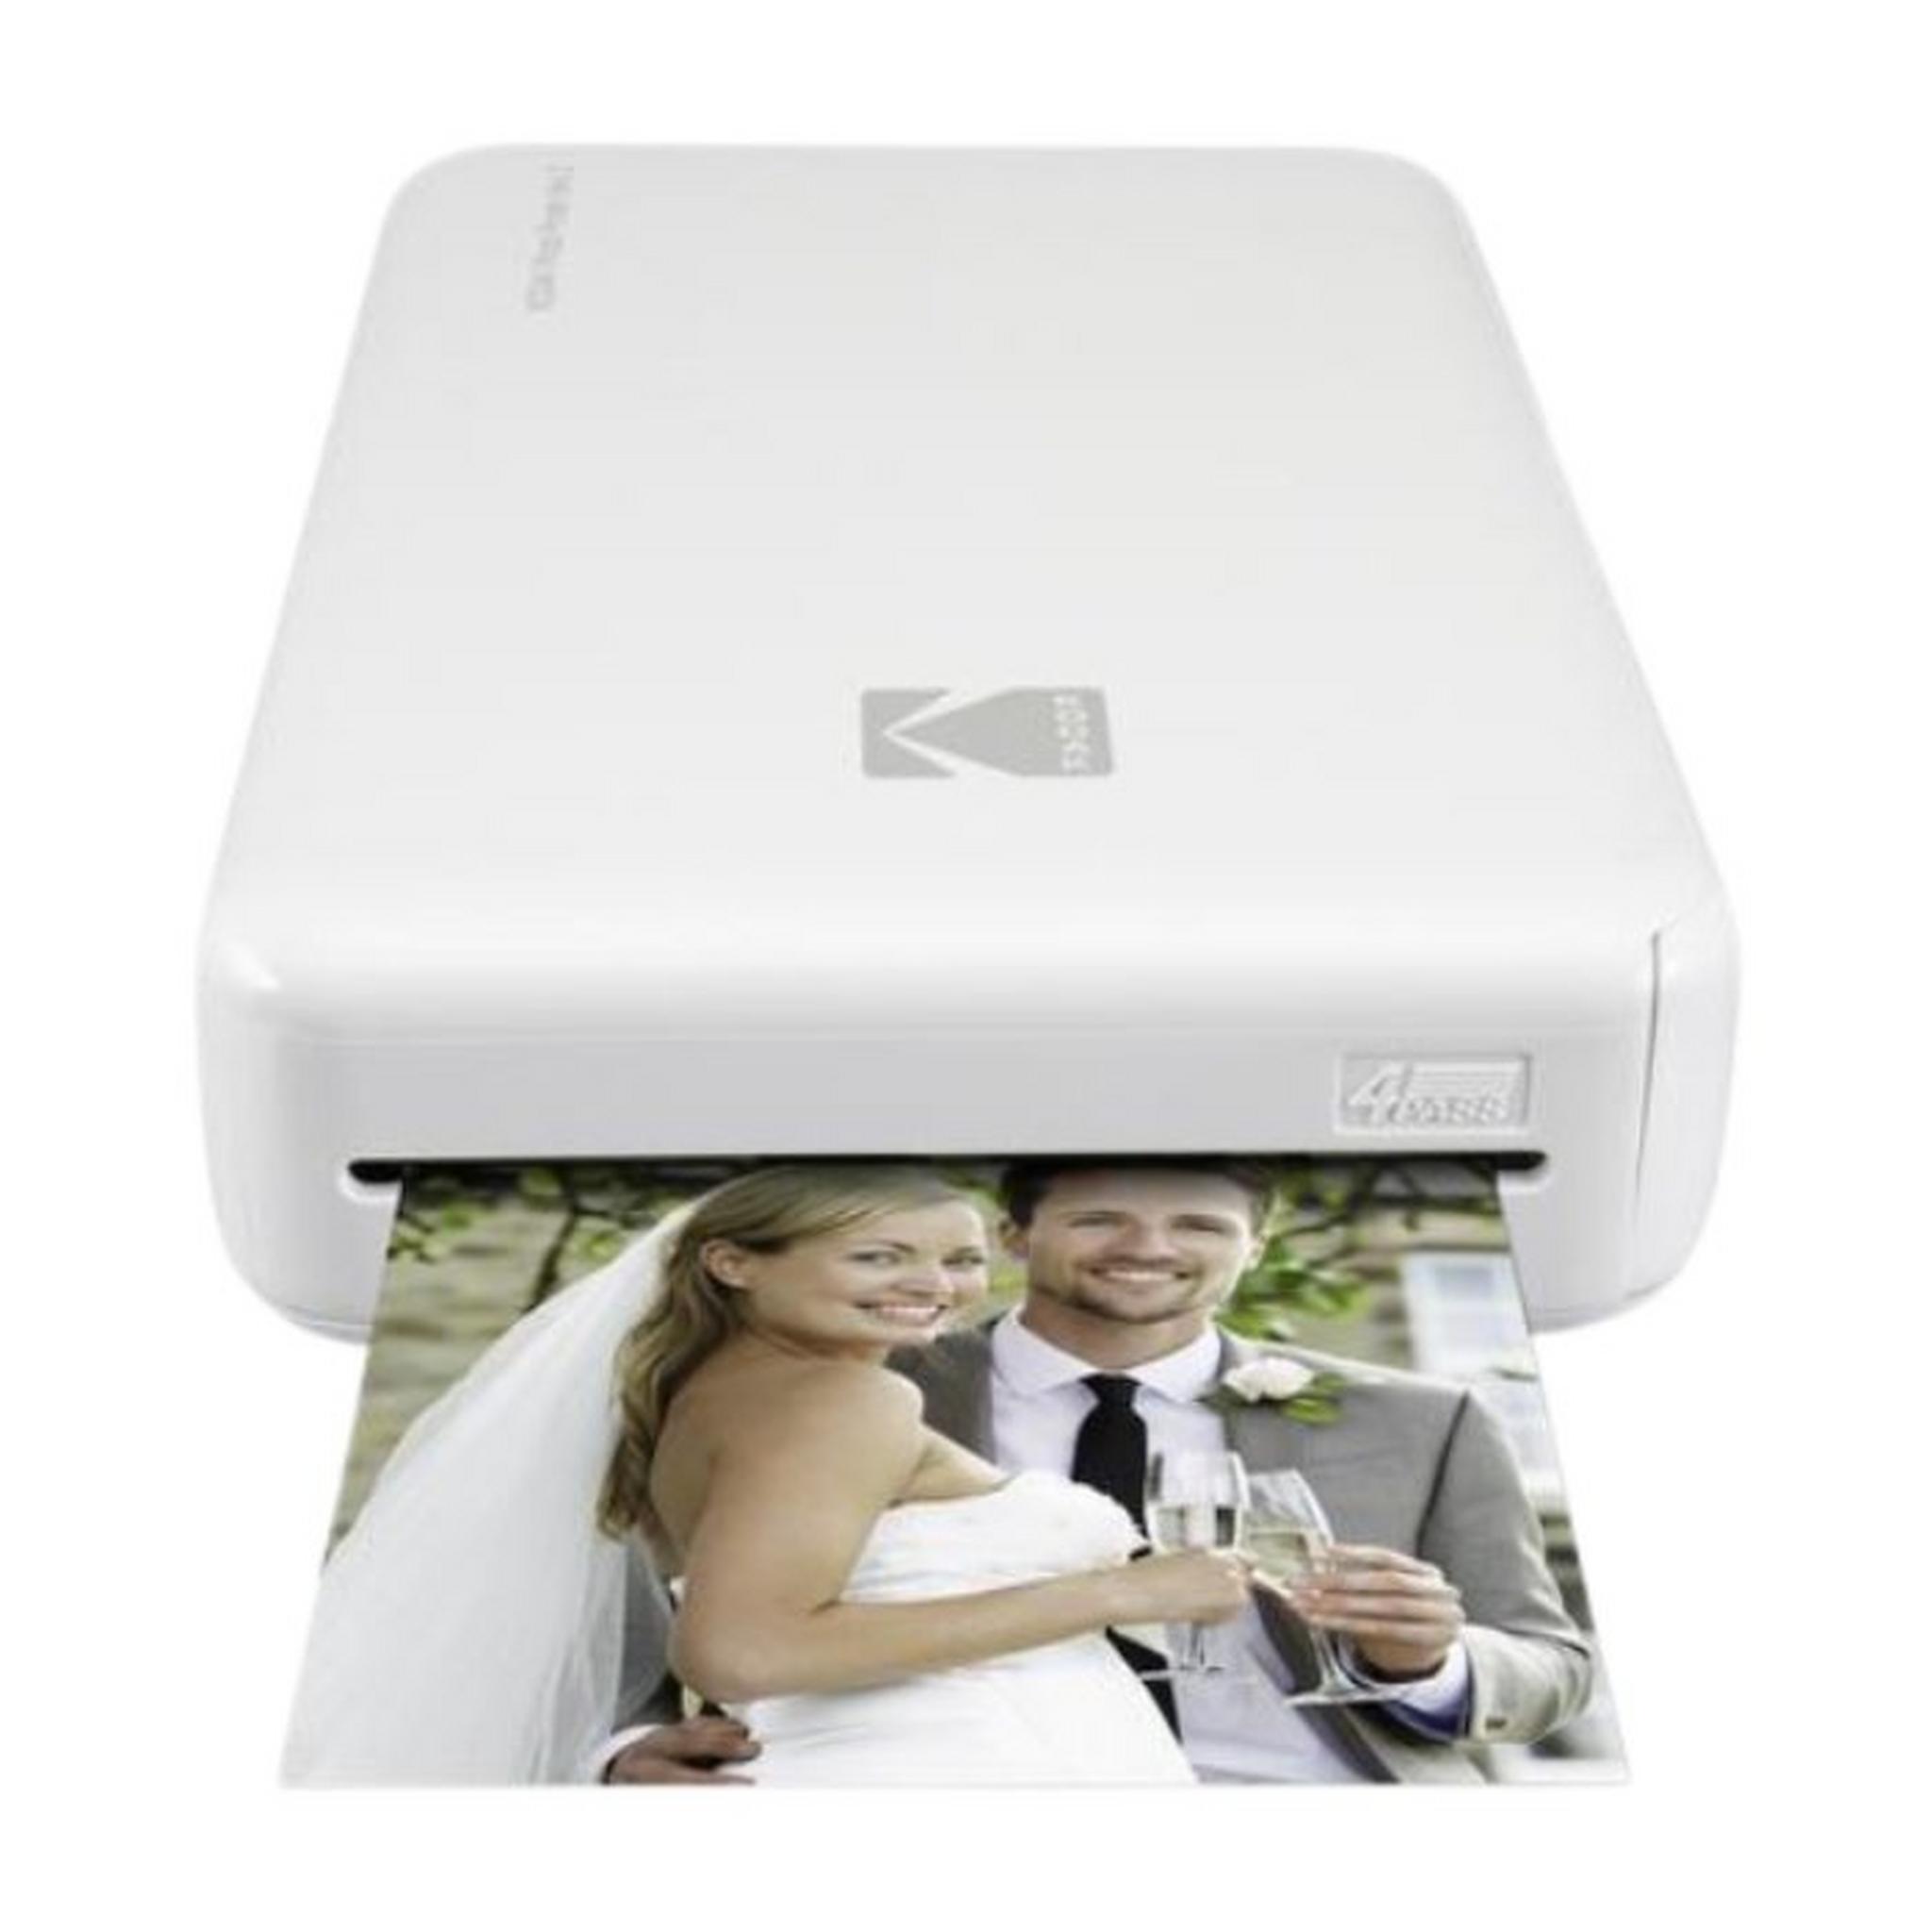 Kodak Mini 2 Instant Photo Printer - White